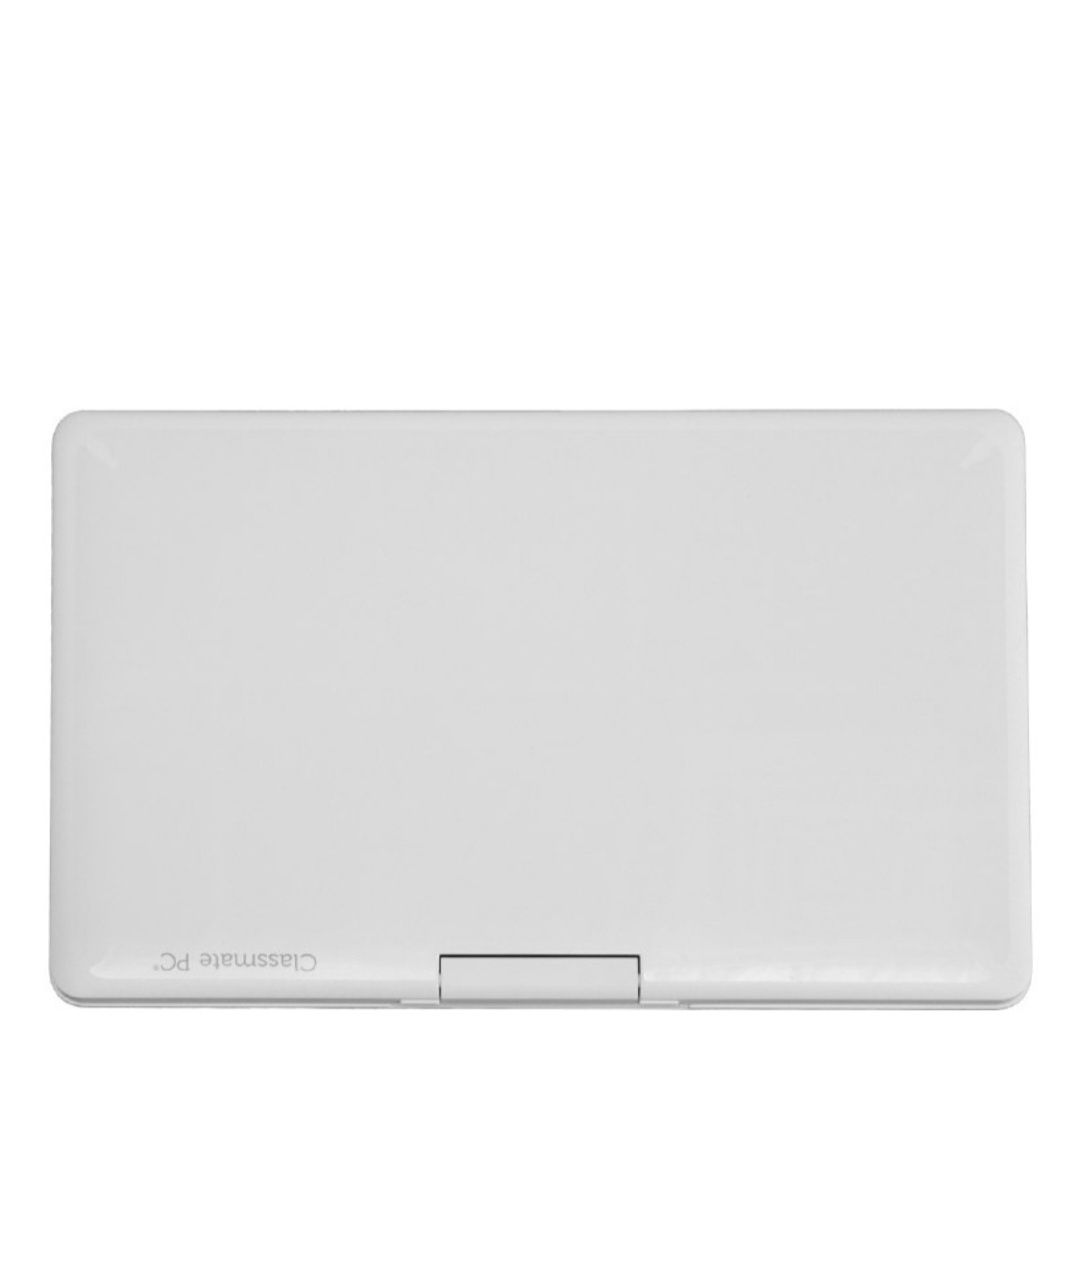 Ноутбук Leap T304 SF20GM6N5000 белый